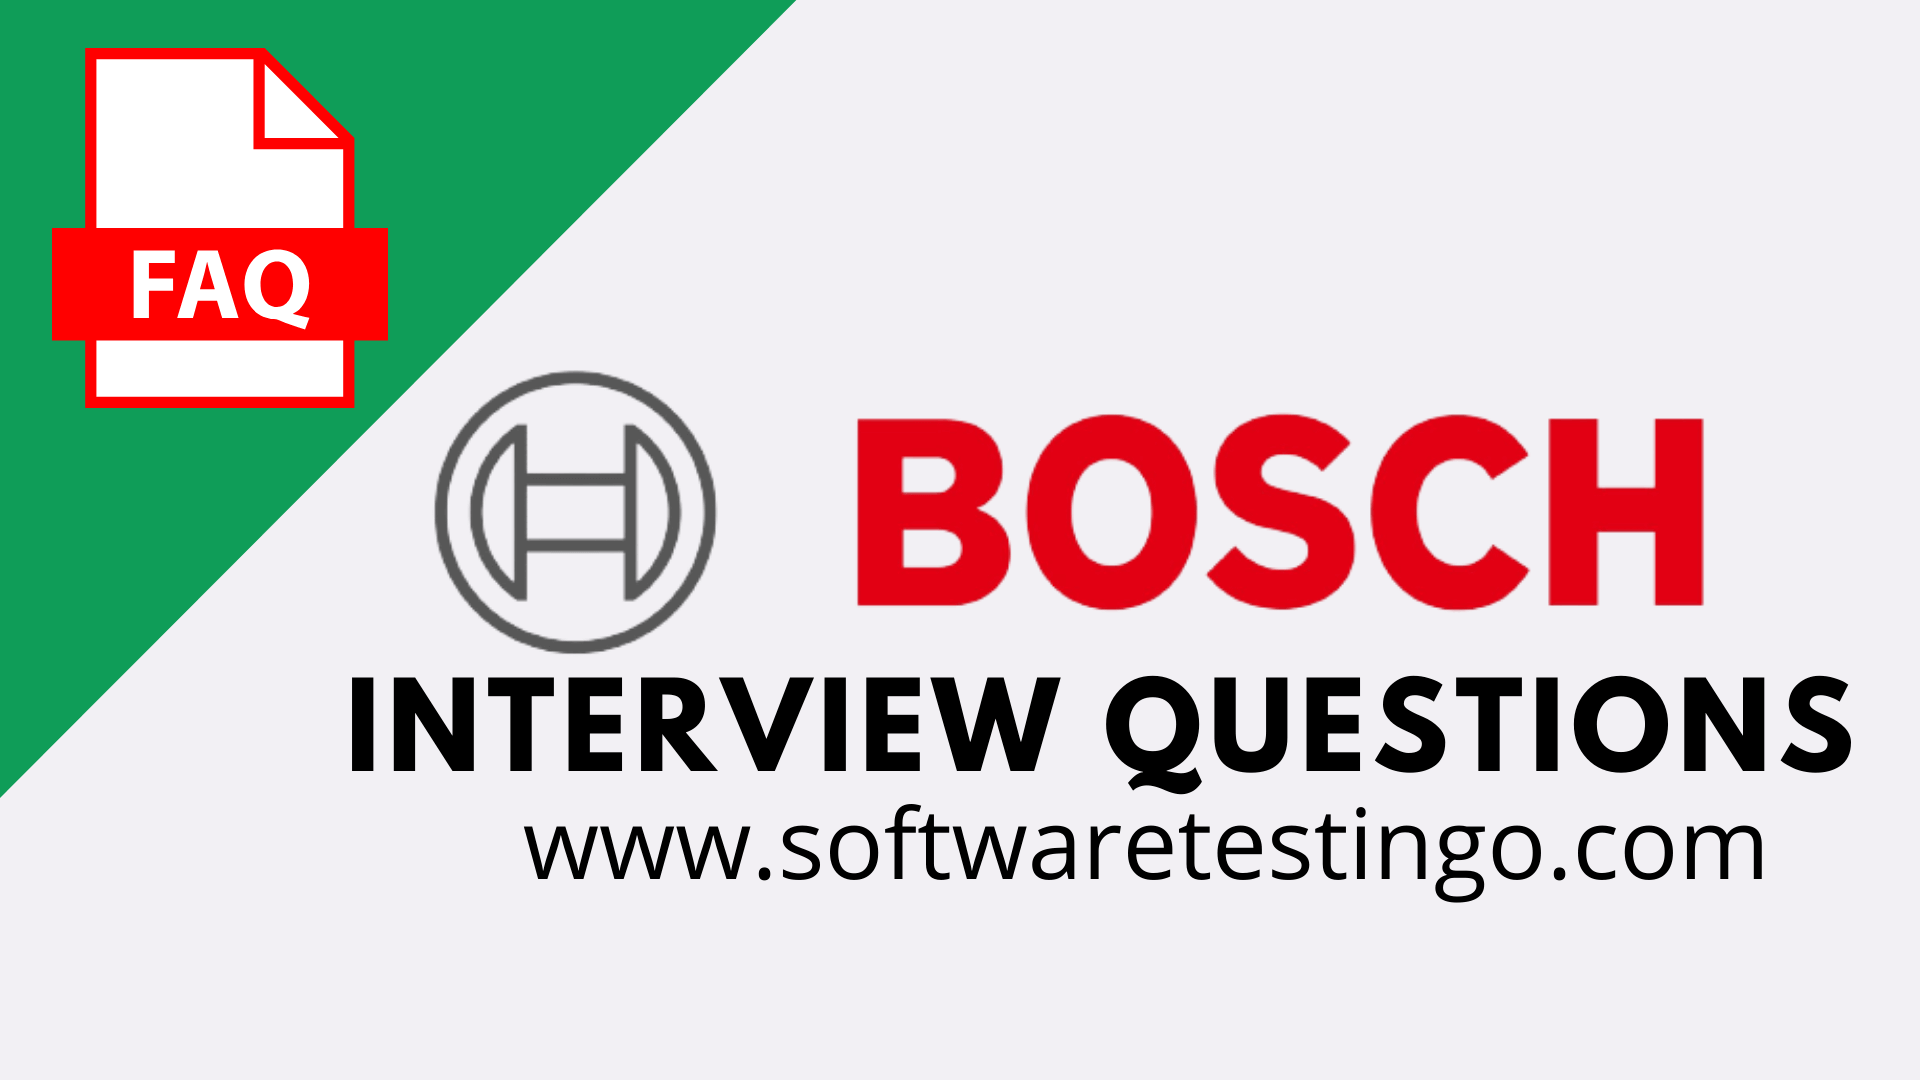 Robert Bosch Interview Questions